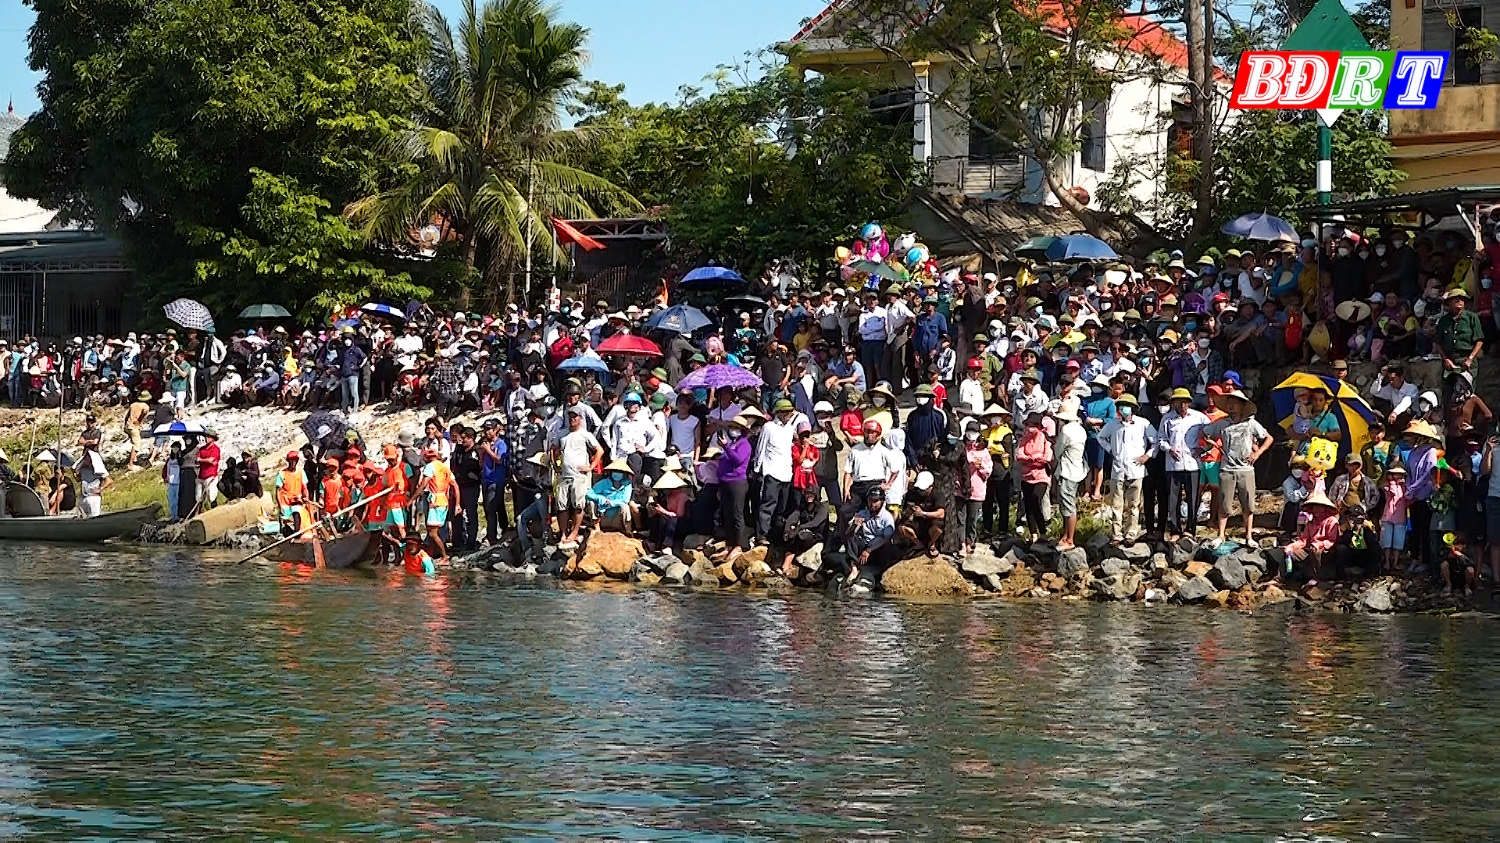 Đông đảo người dân đến xem và cổ vũ tạo không khí vui tươi cho giải đua